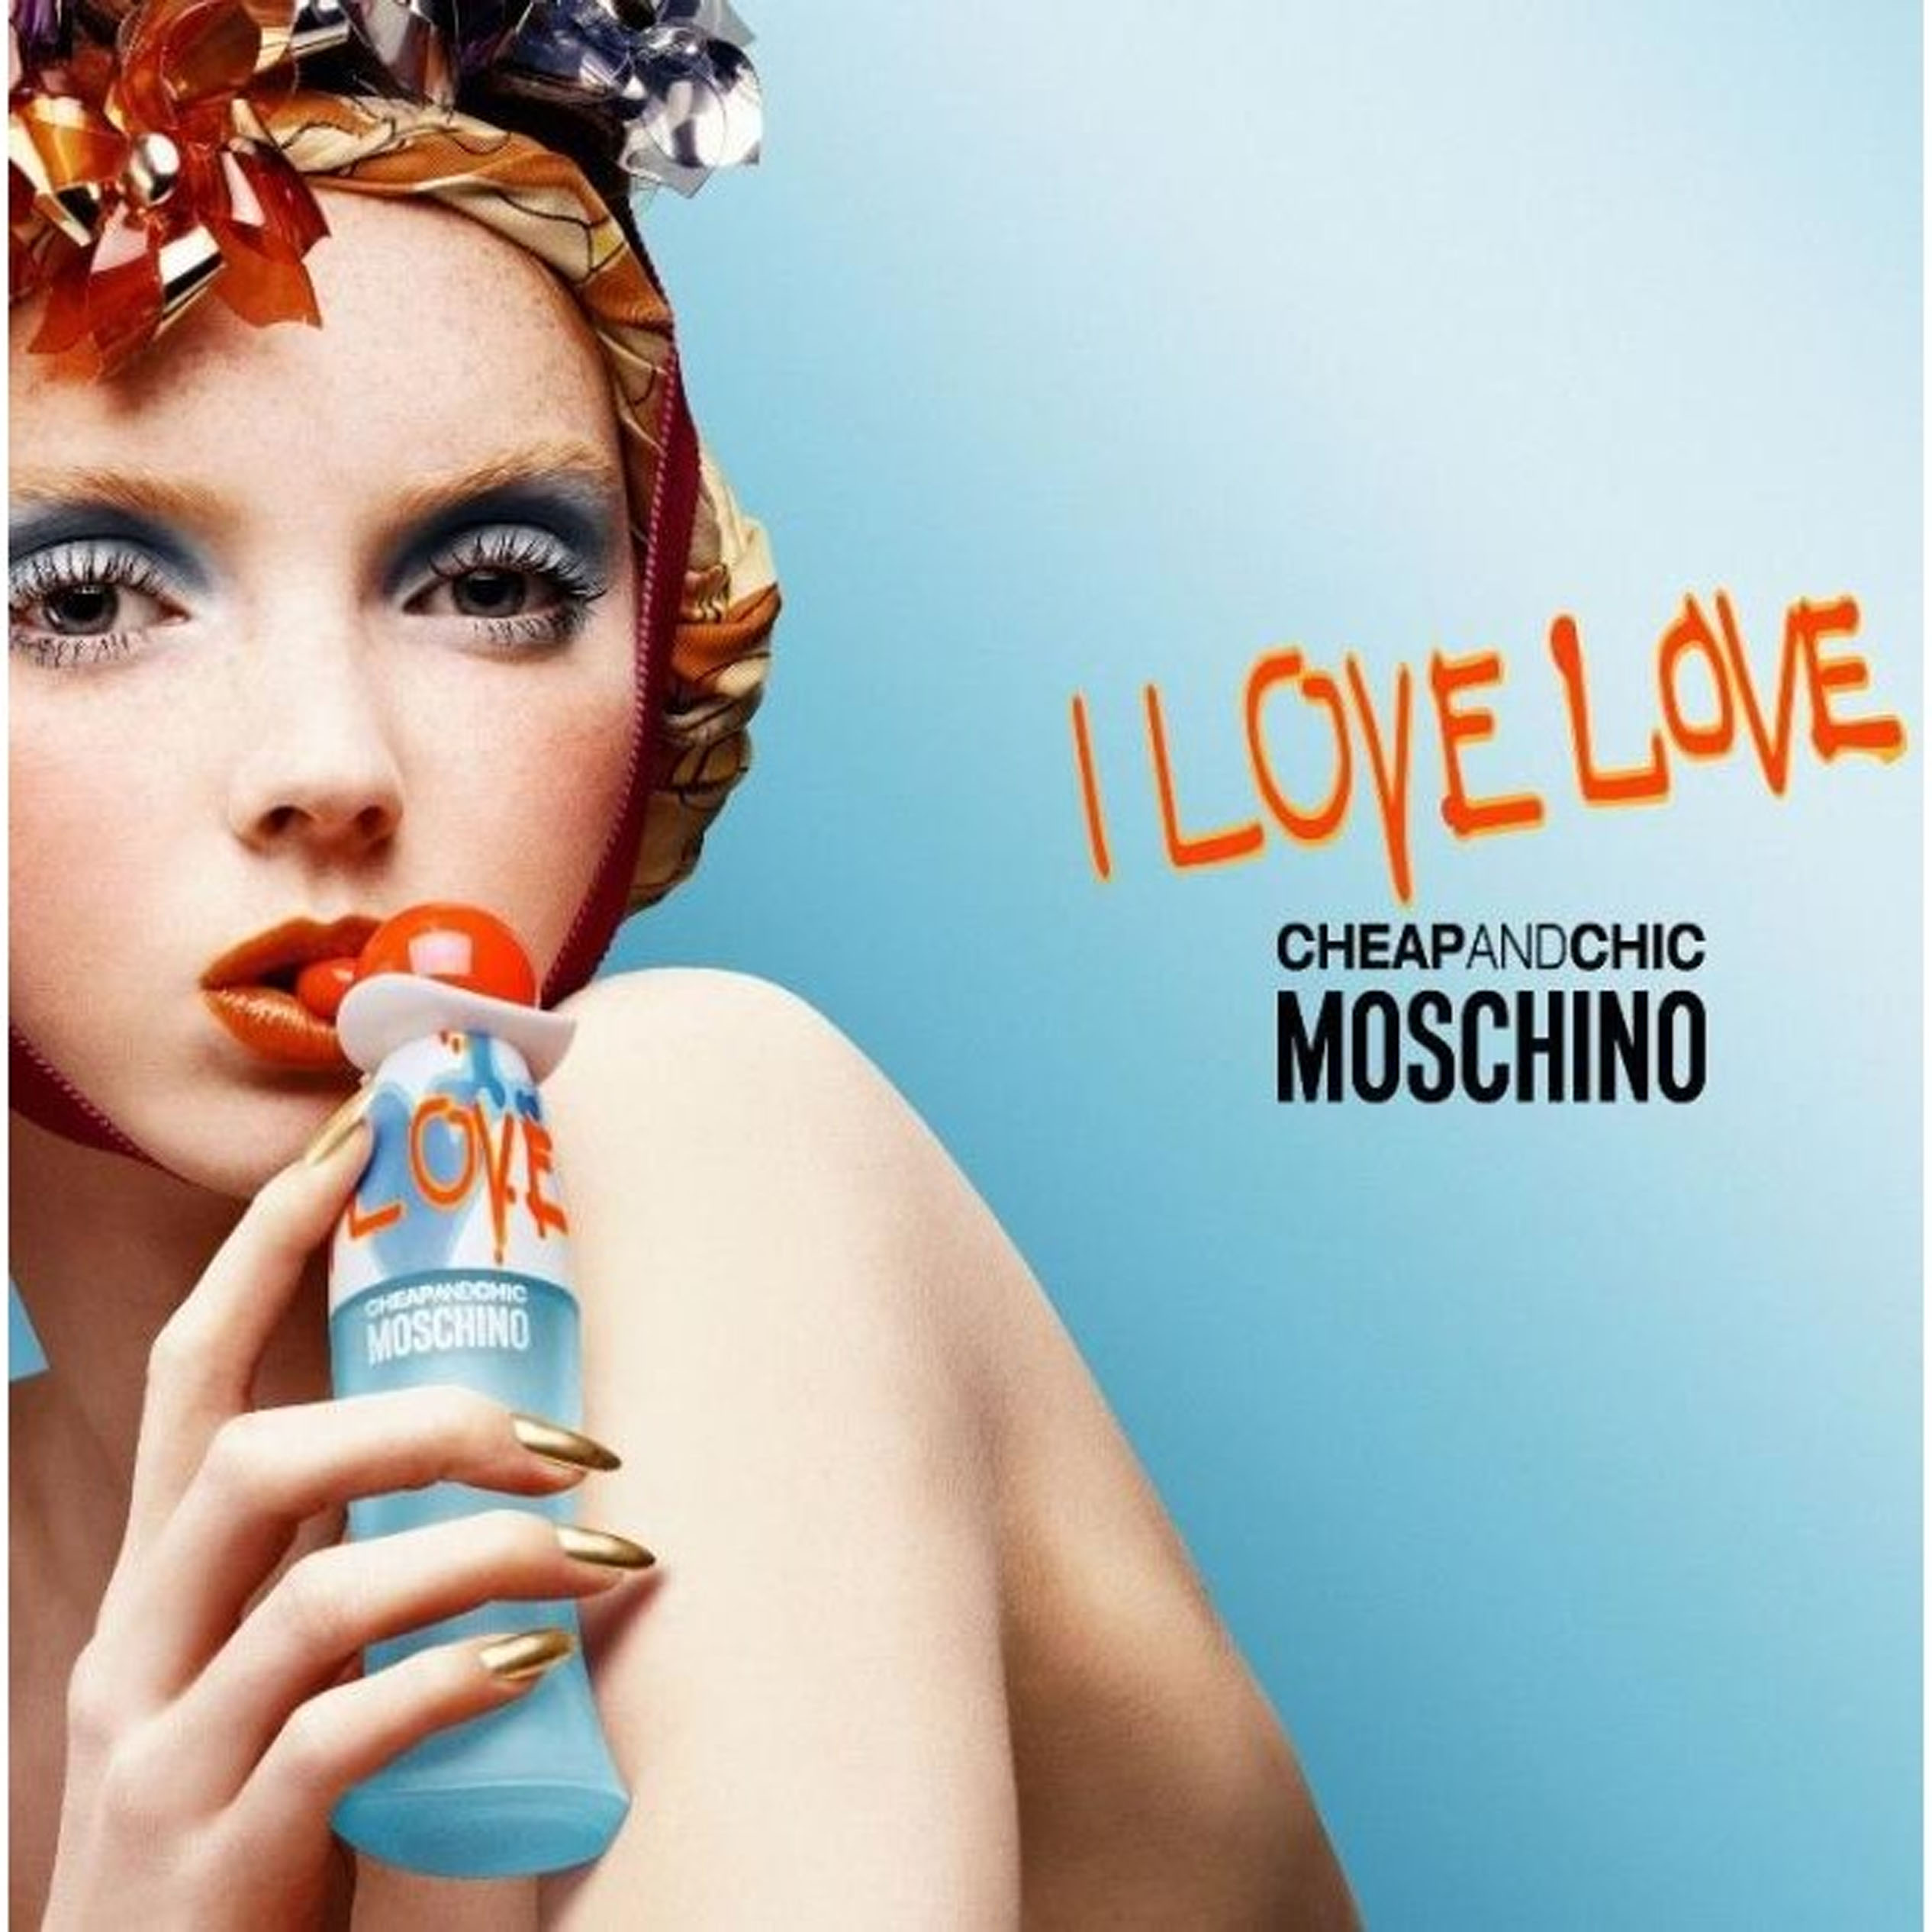 Cheap & Chic I Love Love Moschino (Replica Con Fragancia Importada)- Mujer